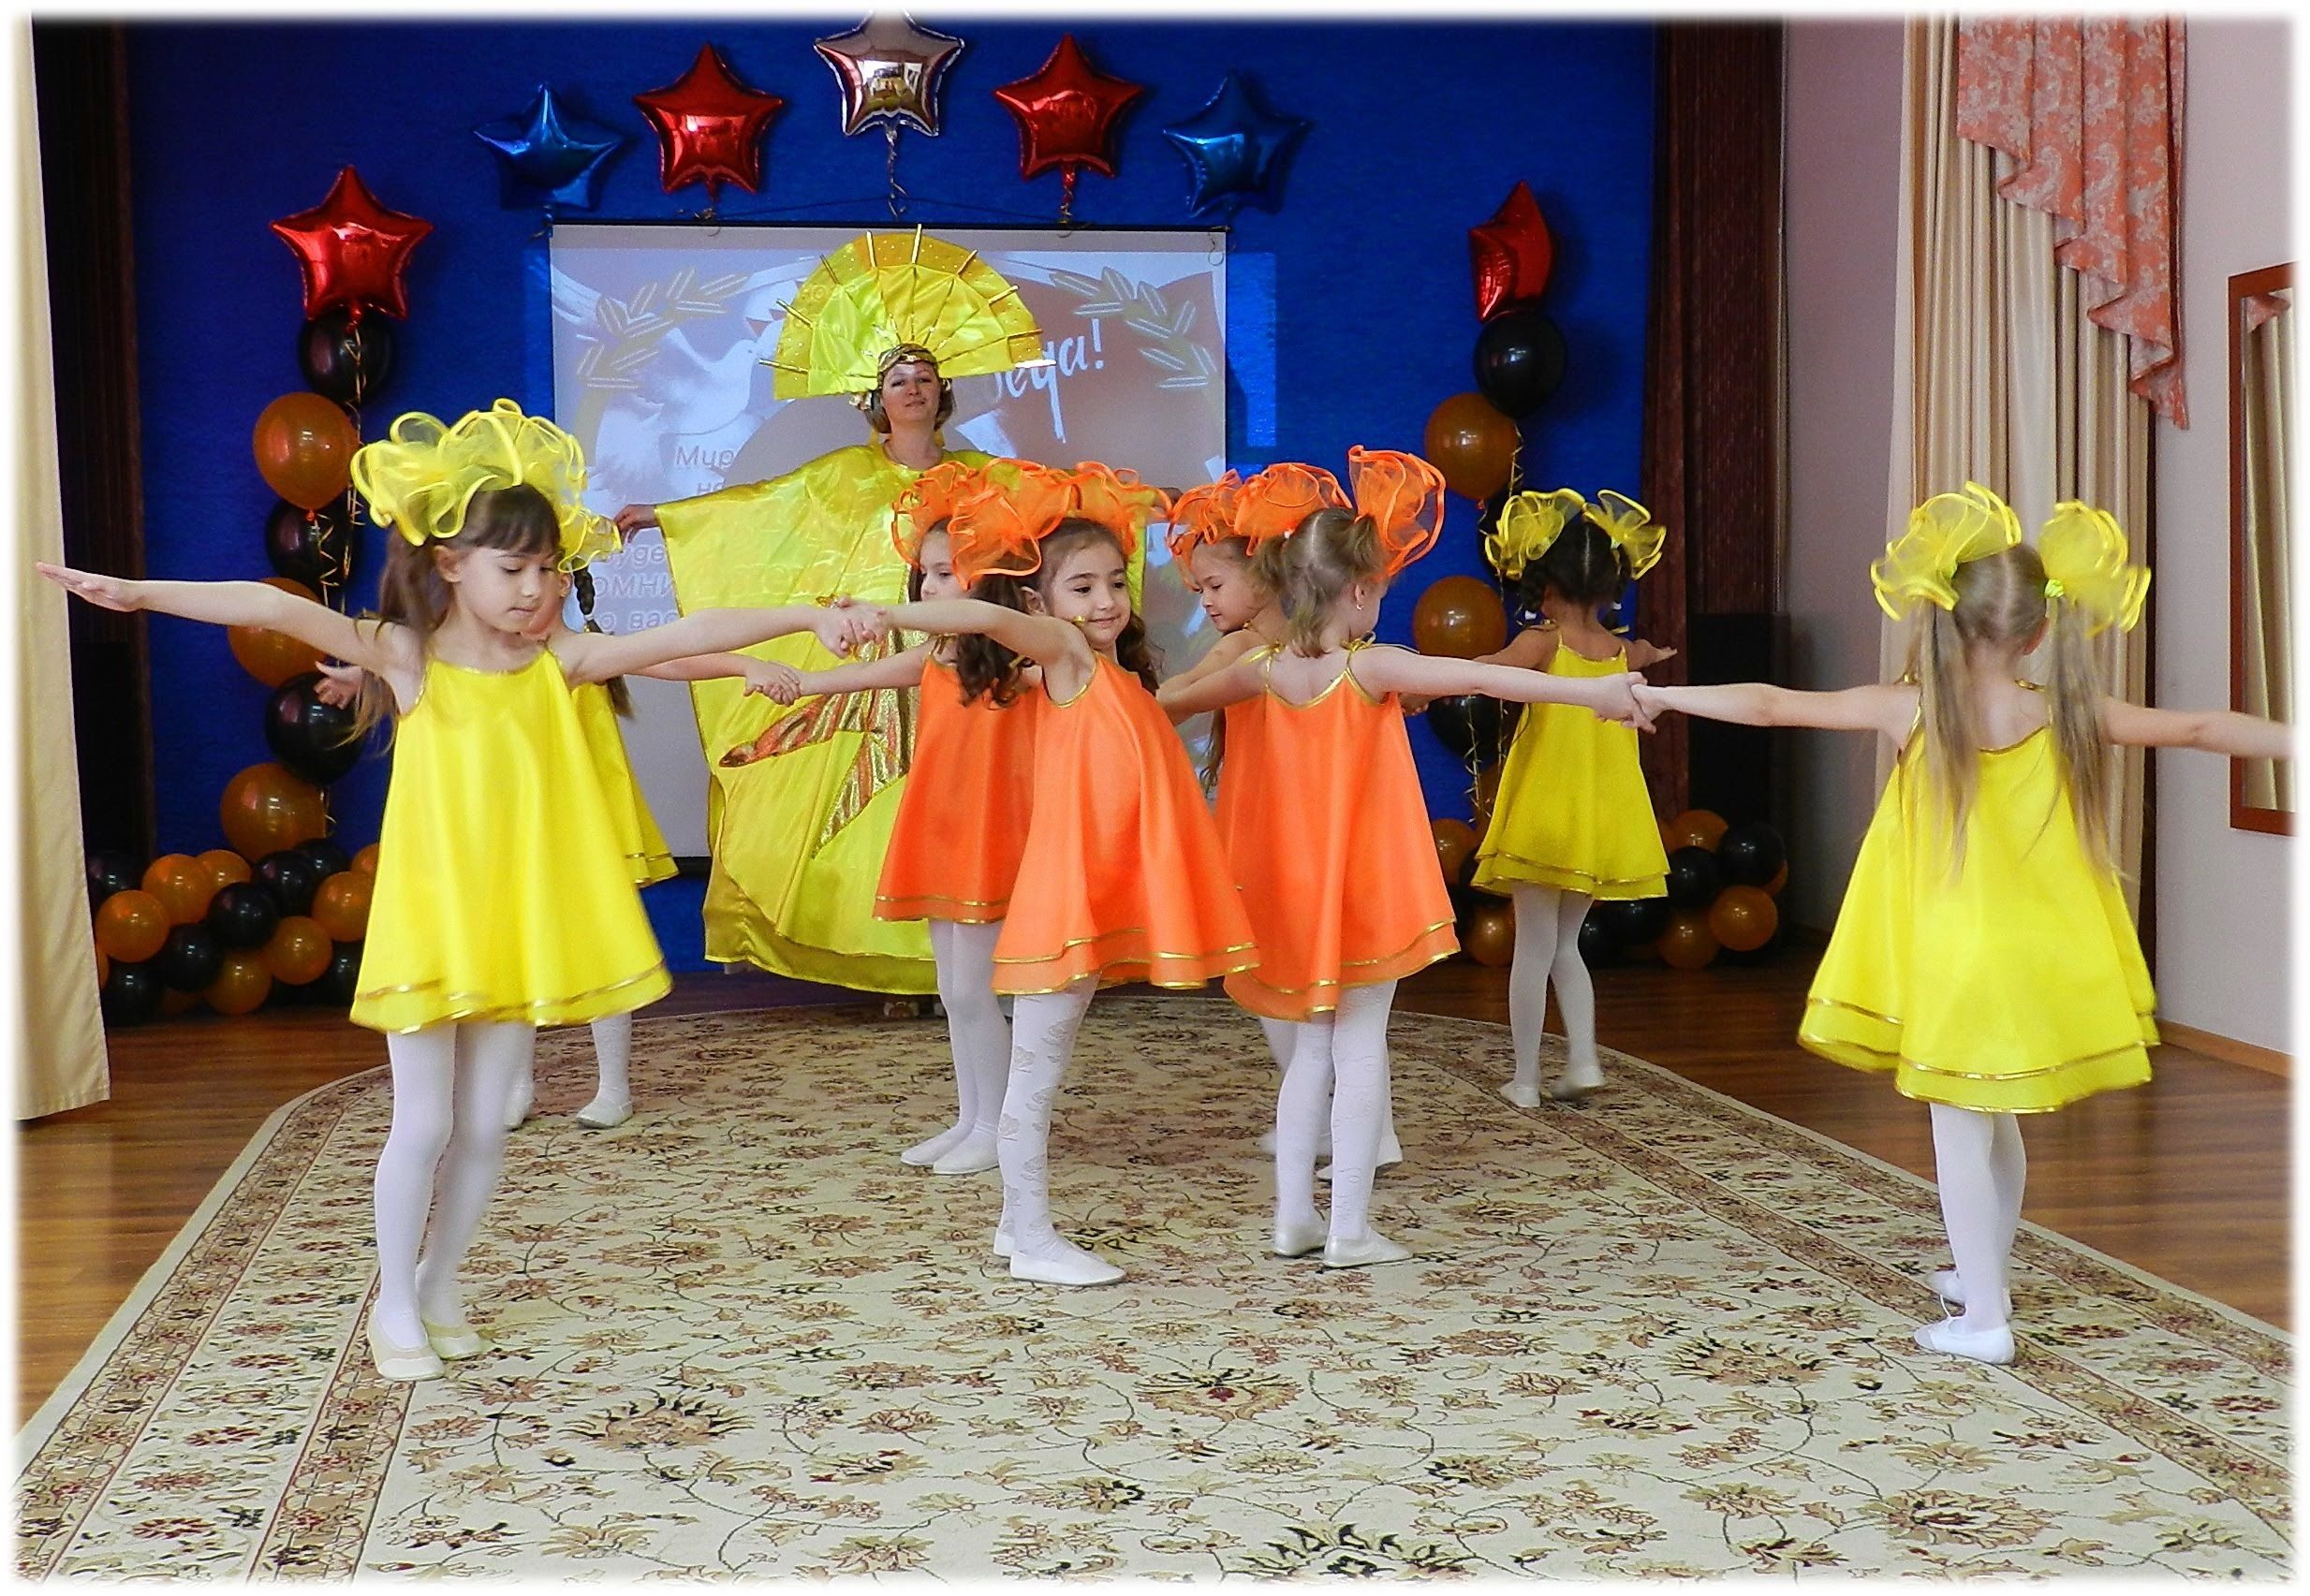 4 года видео танцев танец. Костюмы для танцев в детском саду. Танцевальные костюмы для детей в детском саду. Танцы для детей в детском саду. Дети в садике в танцевальных костюмах.